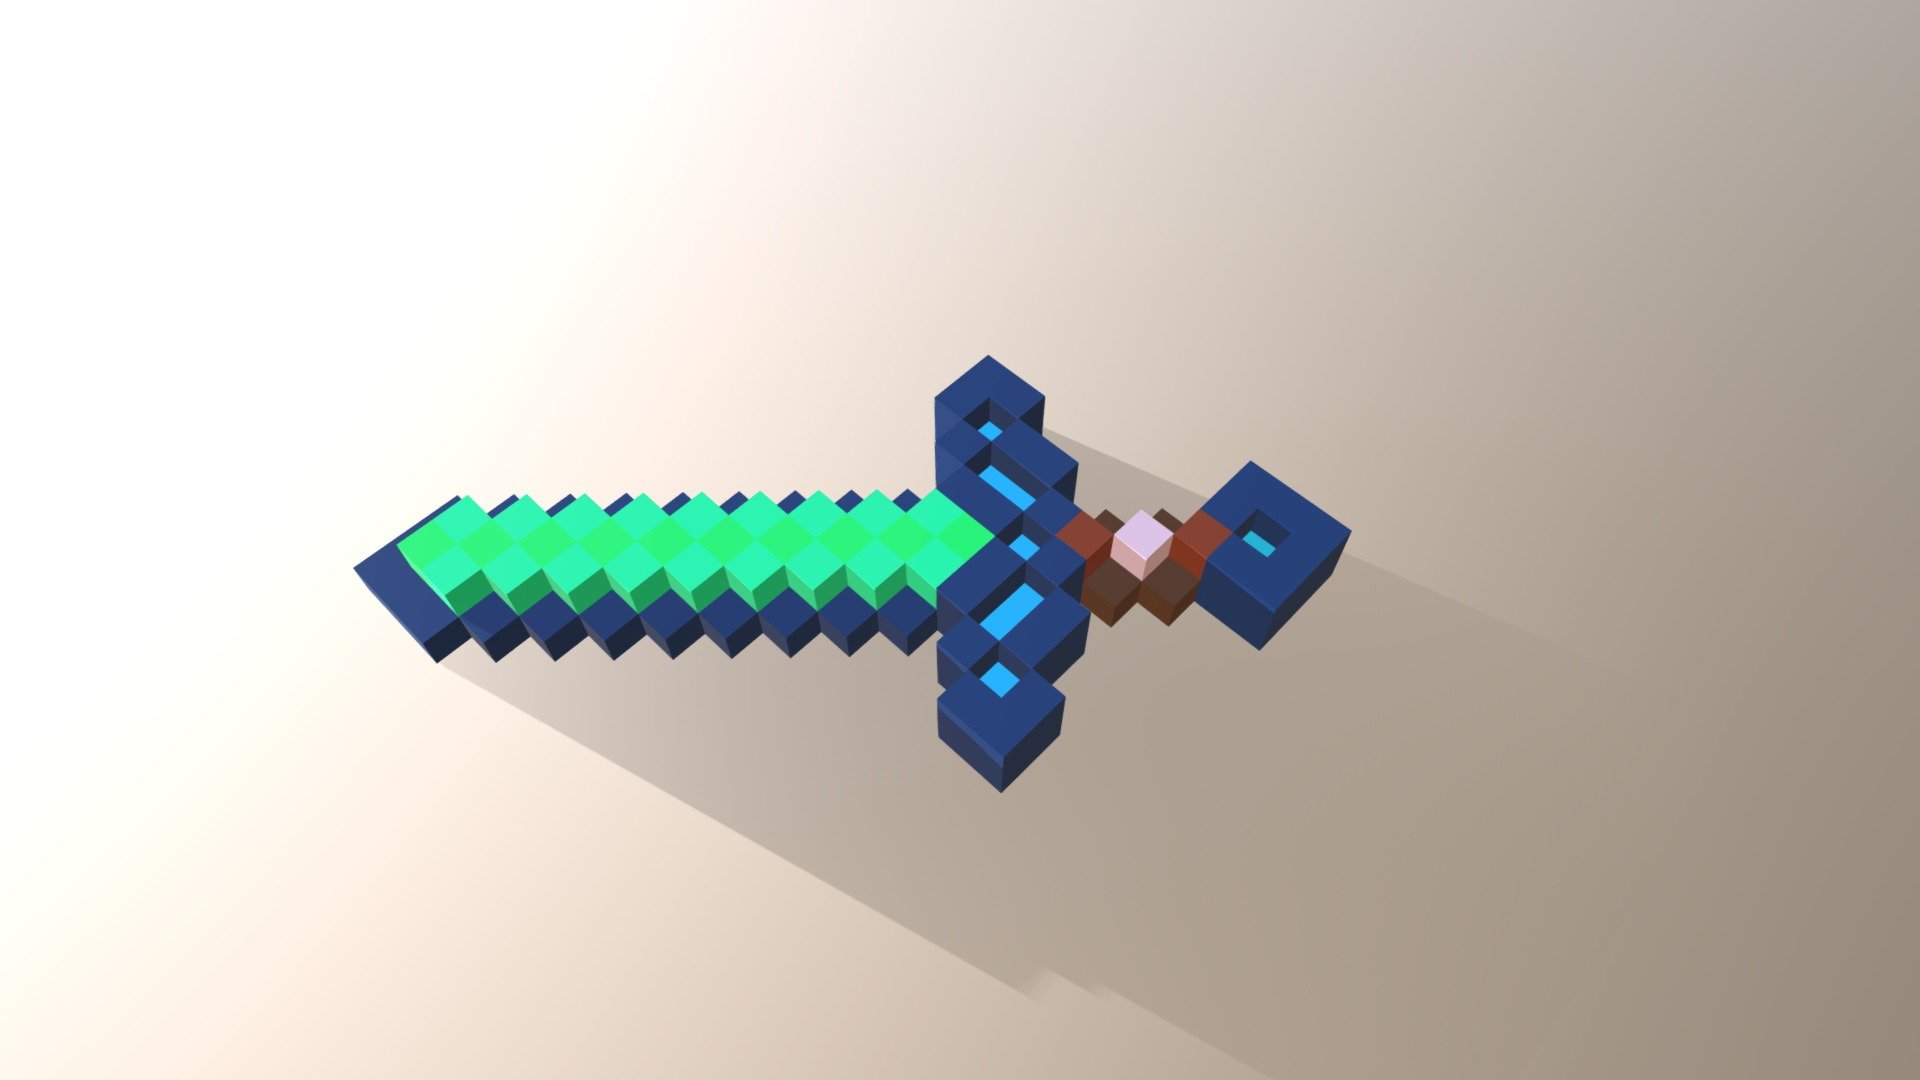 Красивый меч майнкрафт. Алмазный меч. Алмазный меч из МАЙНКРАФТА. Алмаз майнкрафт. Minecraft Стив с алмазным мечом.